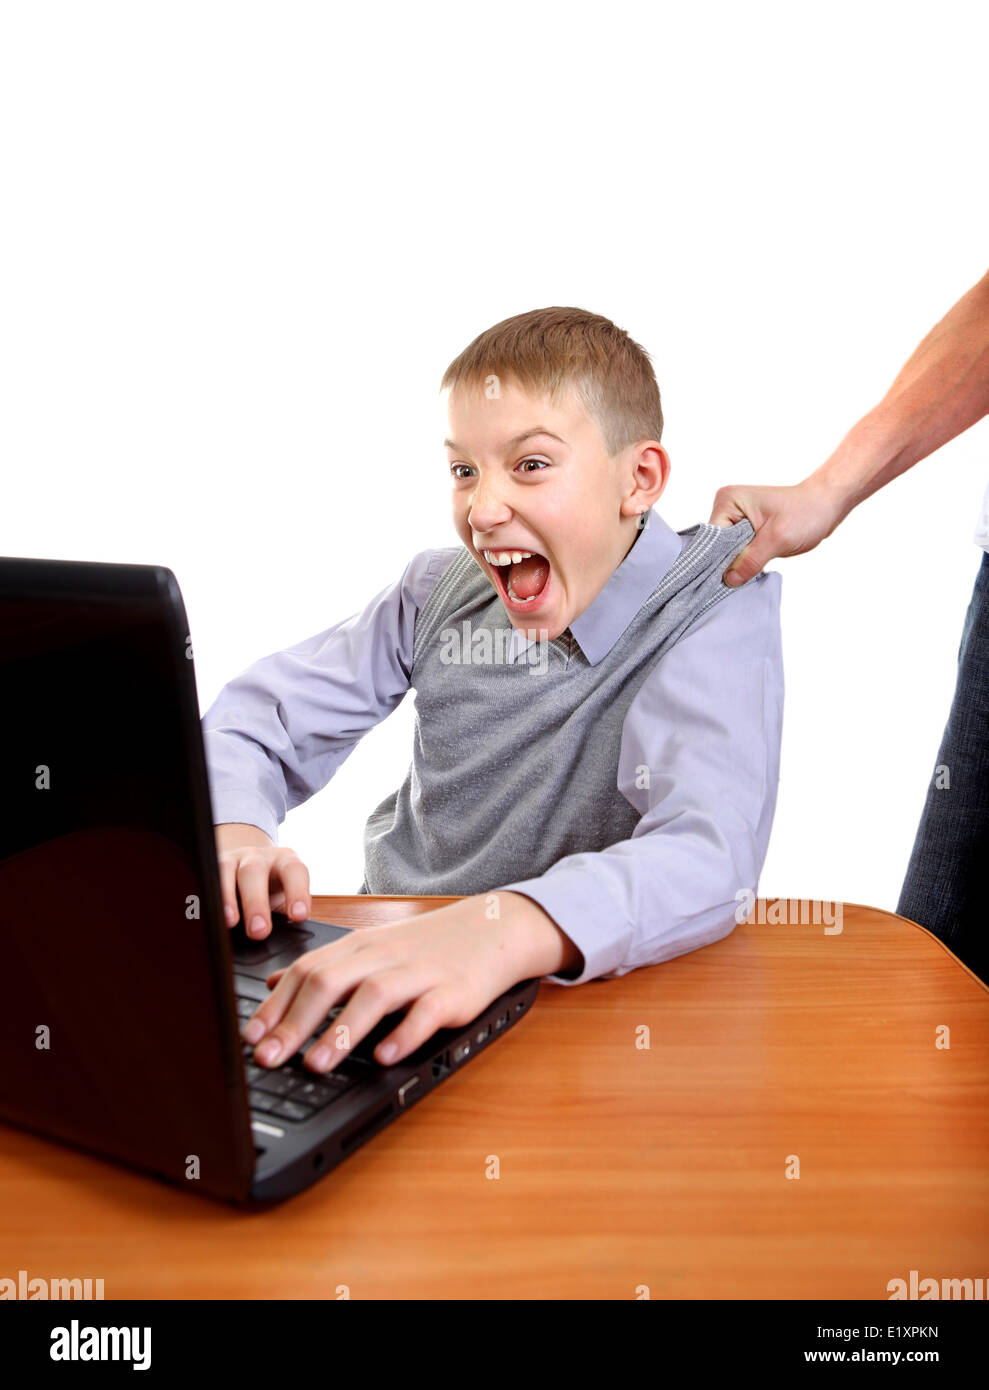 Eltern, Sohn von Laptop zu ziehen Stockfoto